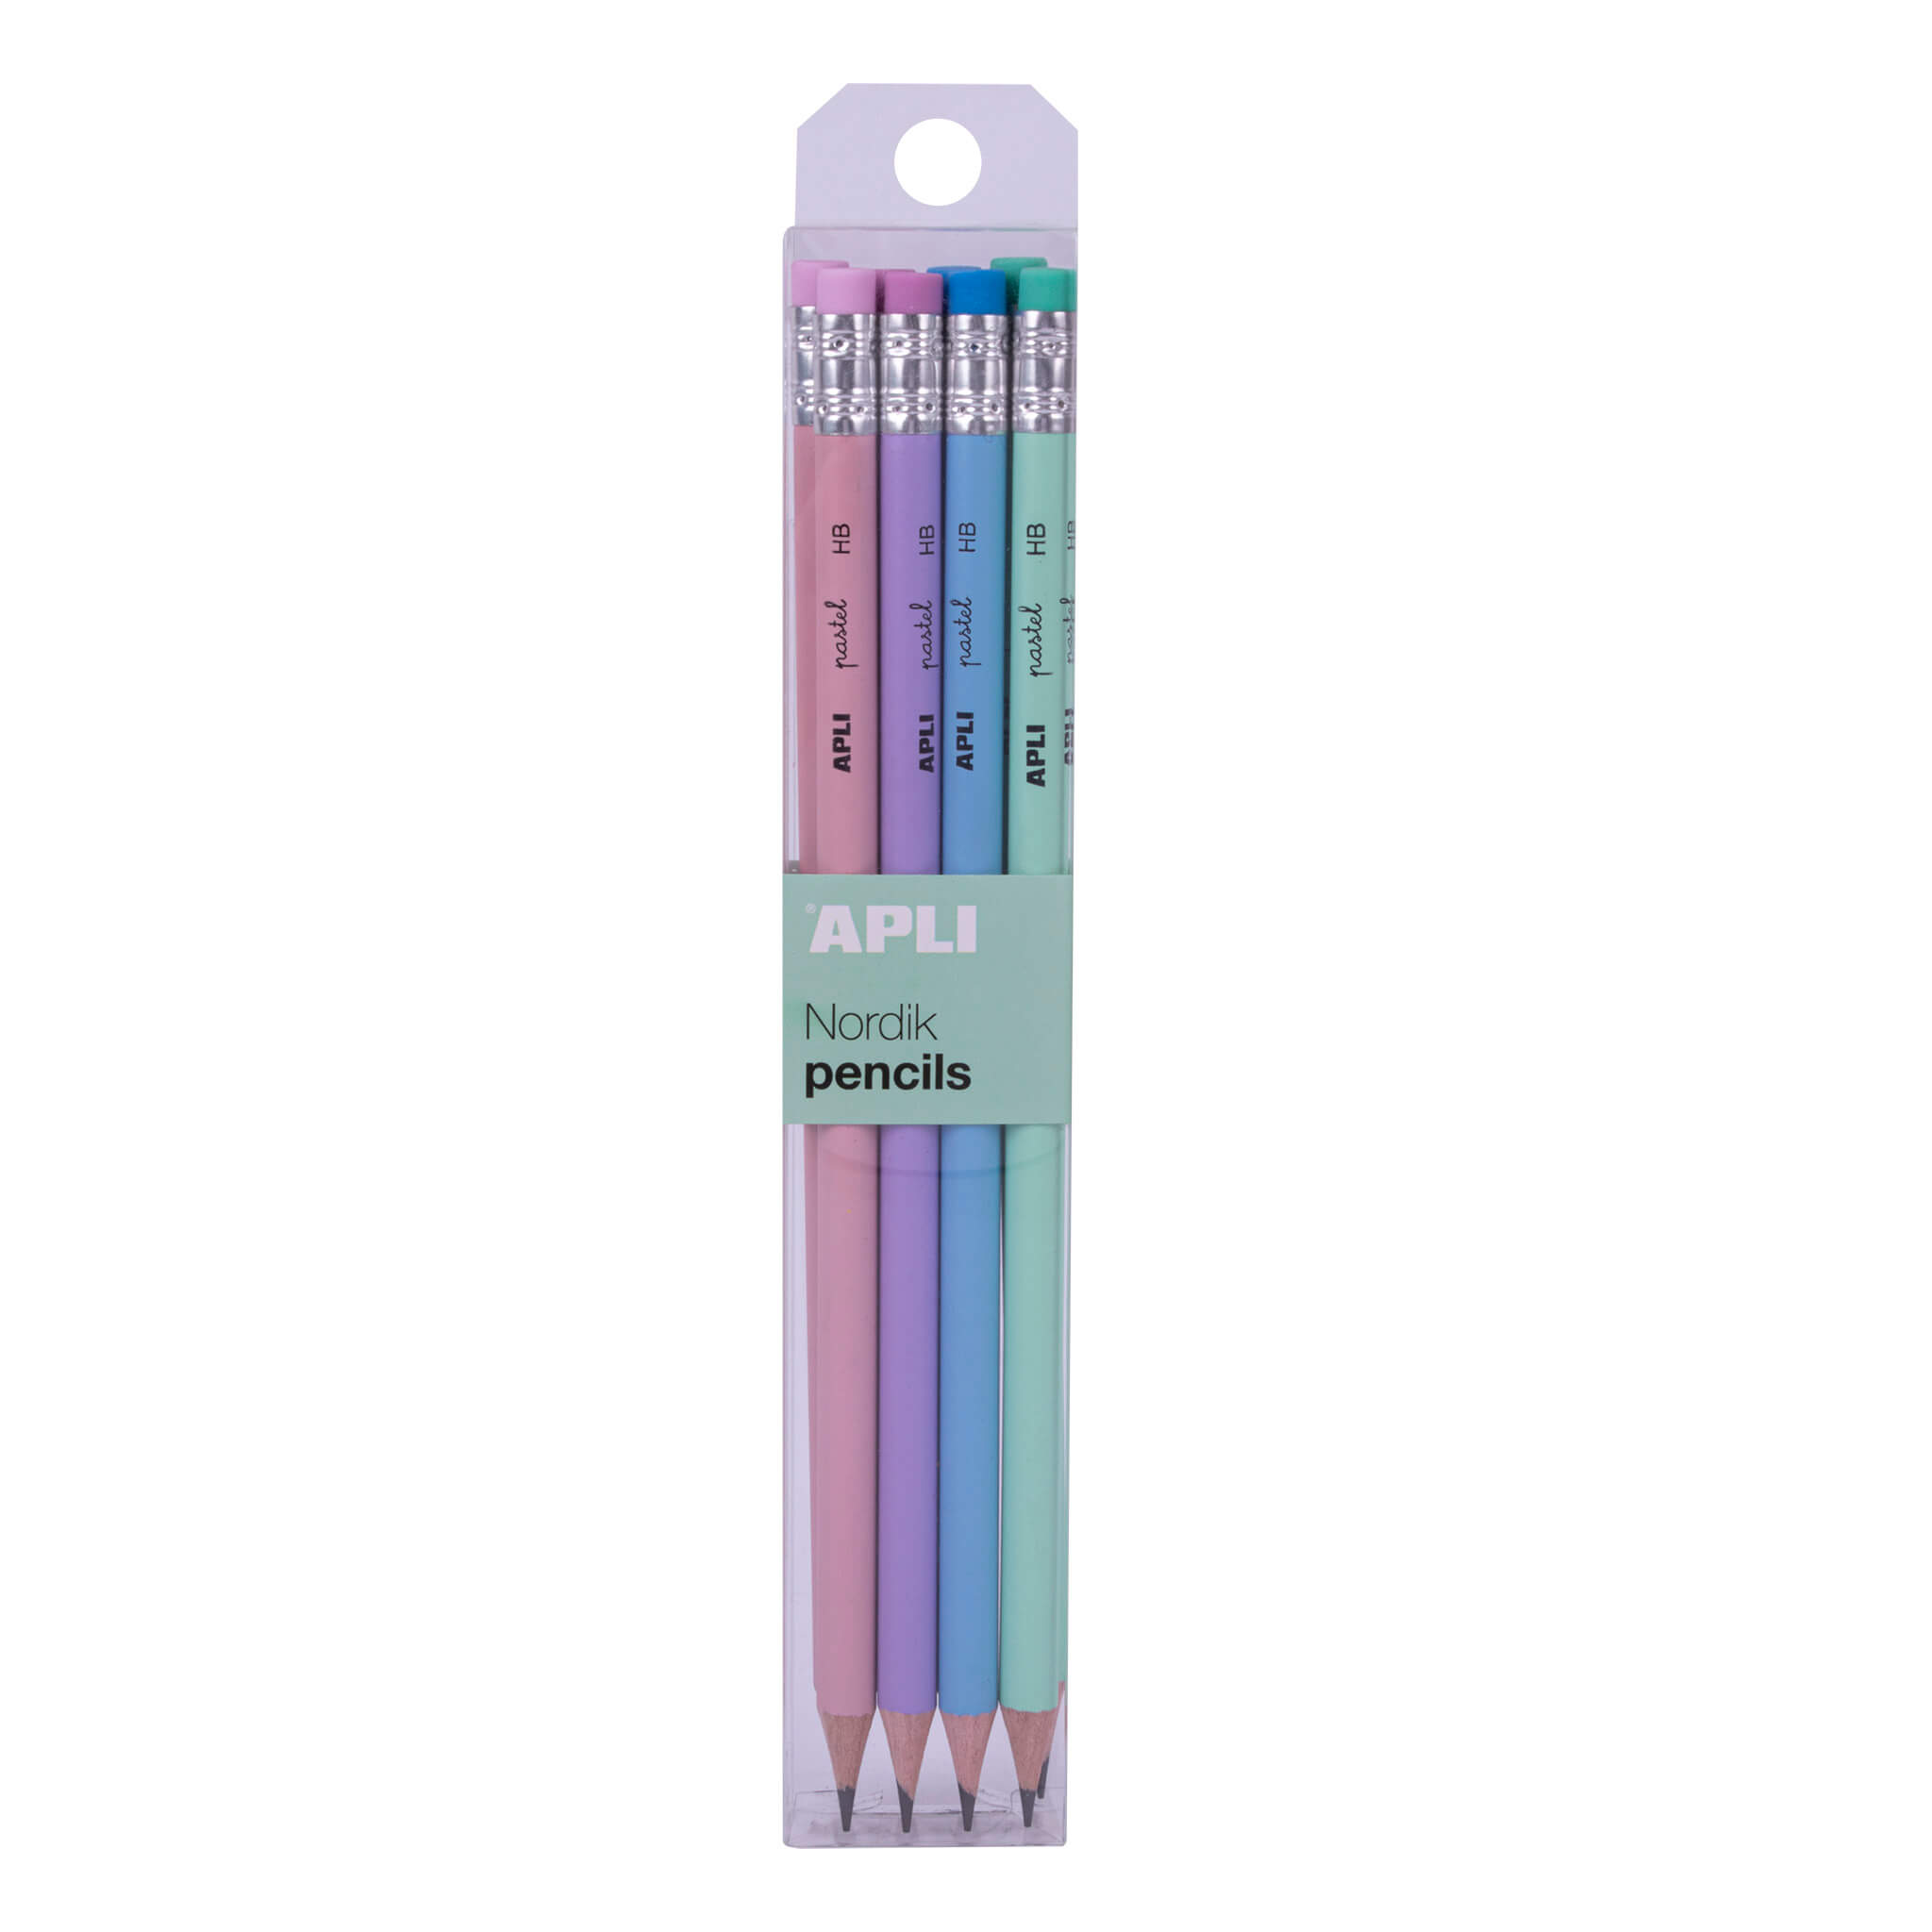 Lot de 8 crayons graphite HB Apli couleurs pastel